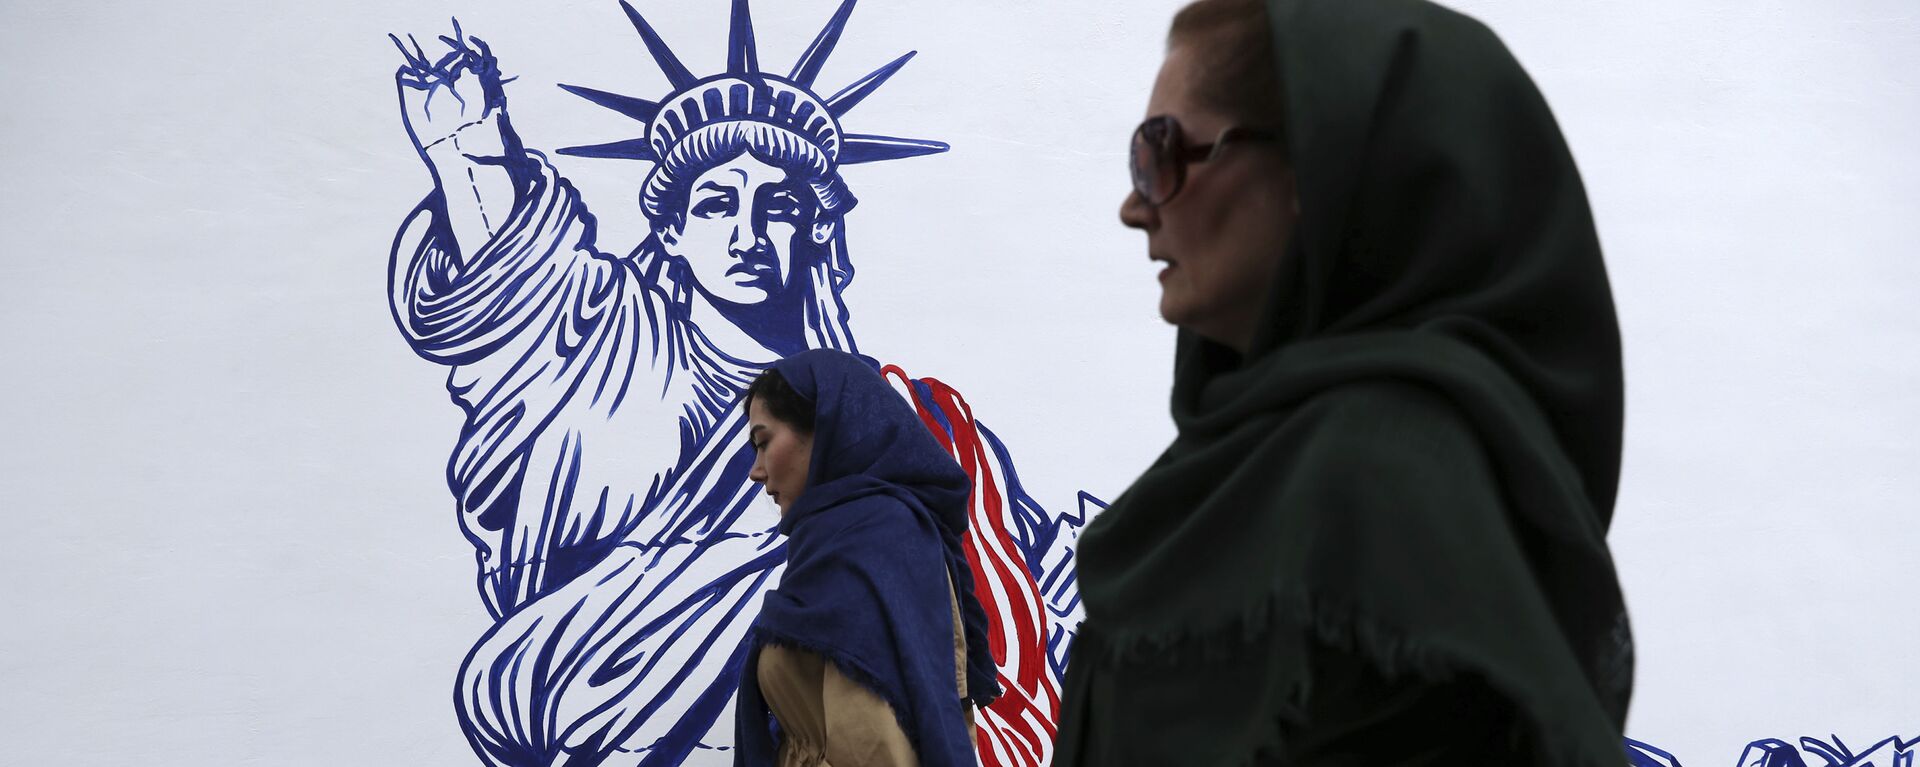 Pessoas passam por mural satírico da Estátua da Liberdade no prédio da antiga embaixada da EUA em Teerã, Irã, 2 de novembro de 2019 - Sputnik Brasil, 1920, 09.08.2022